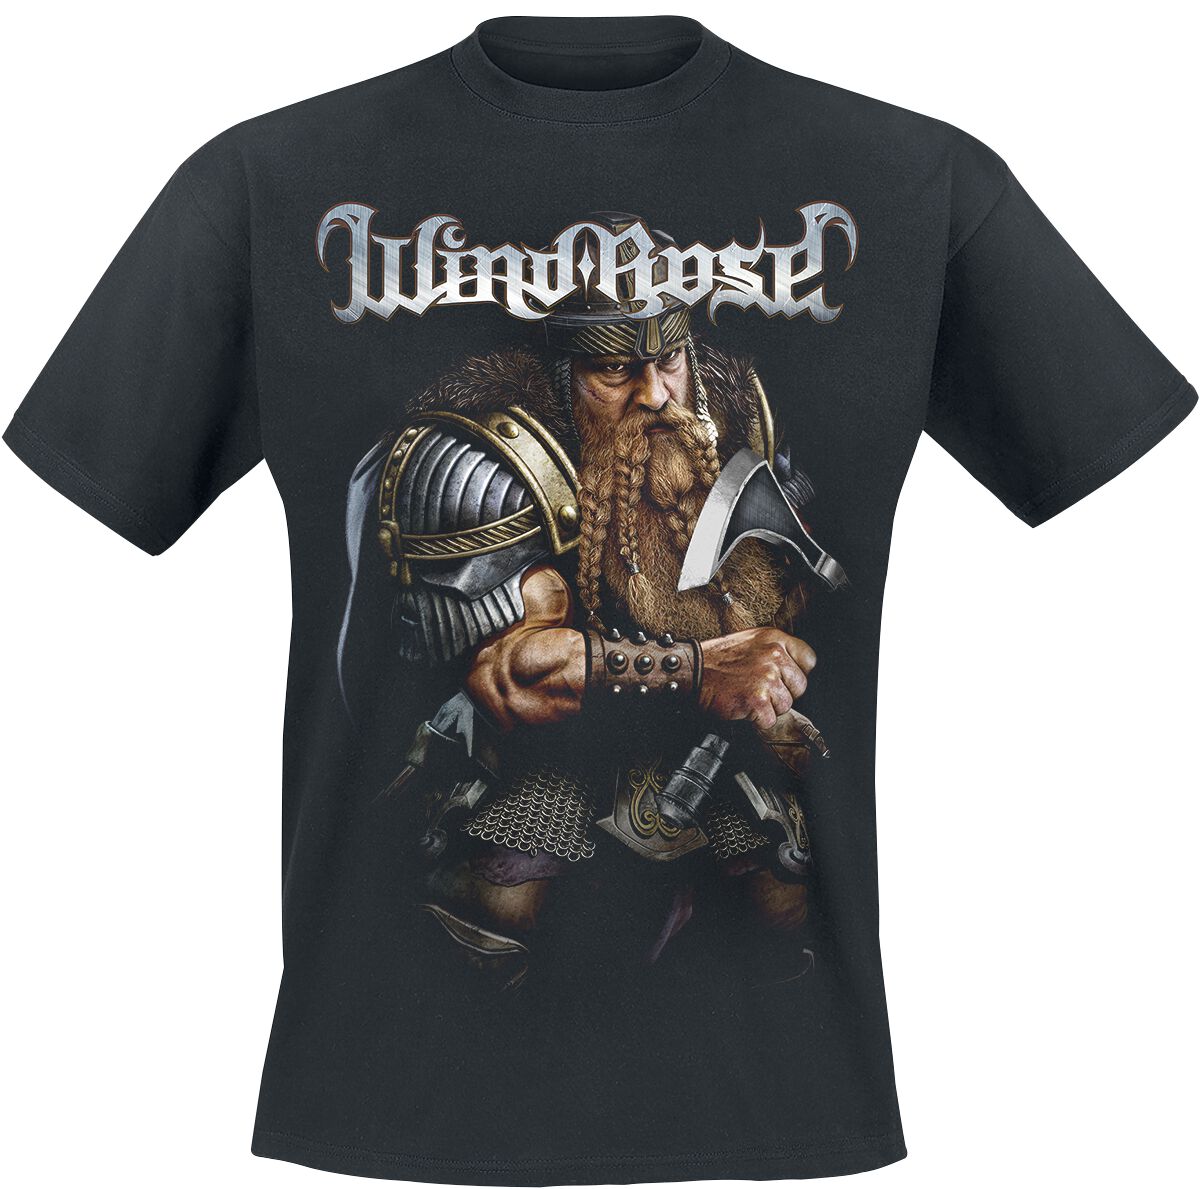 Wind Rose T-Shirt - Dwarf - S bis 4XL - für Männer - Größe M - schwarz  - Lizenziertes Merchandise!